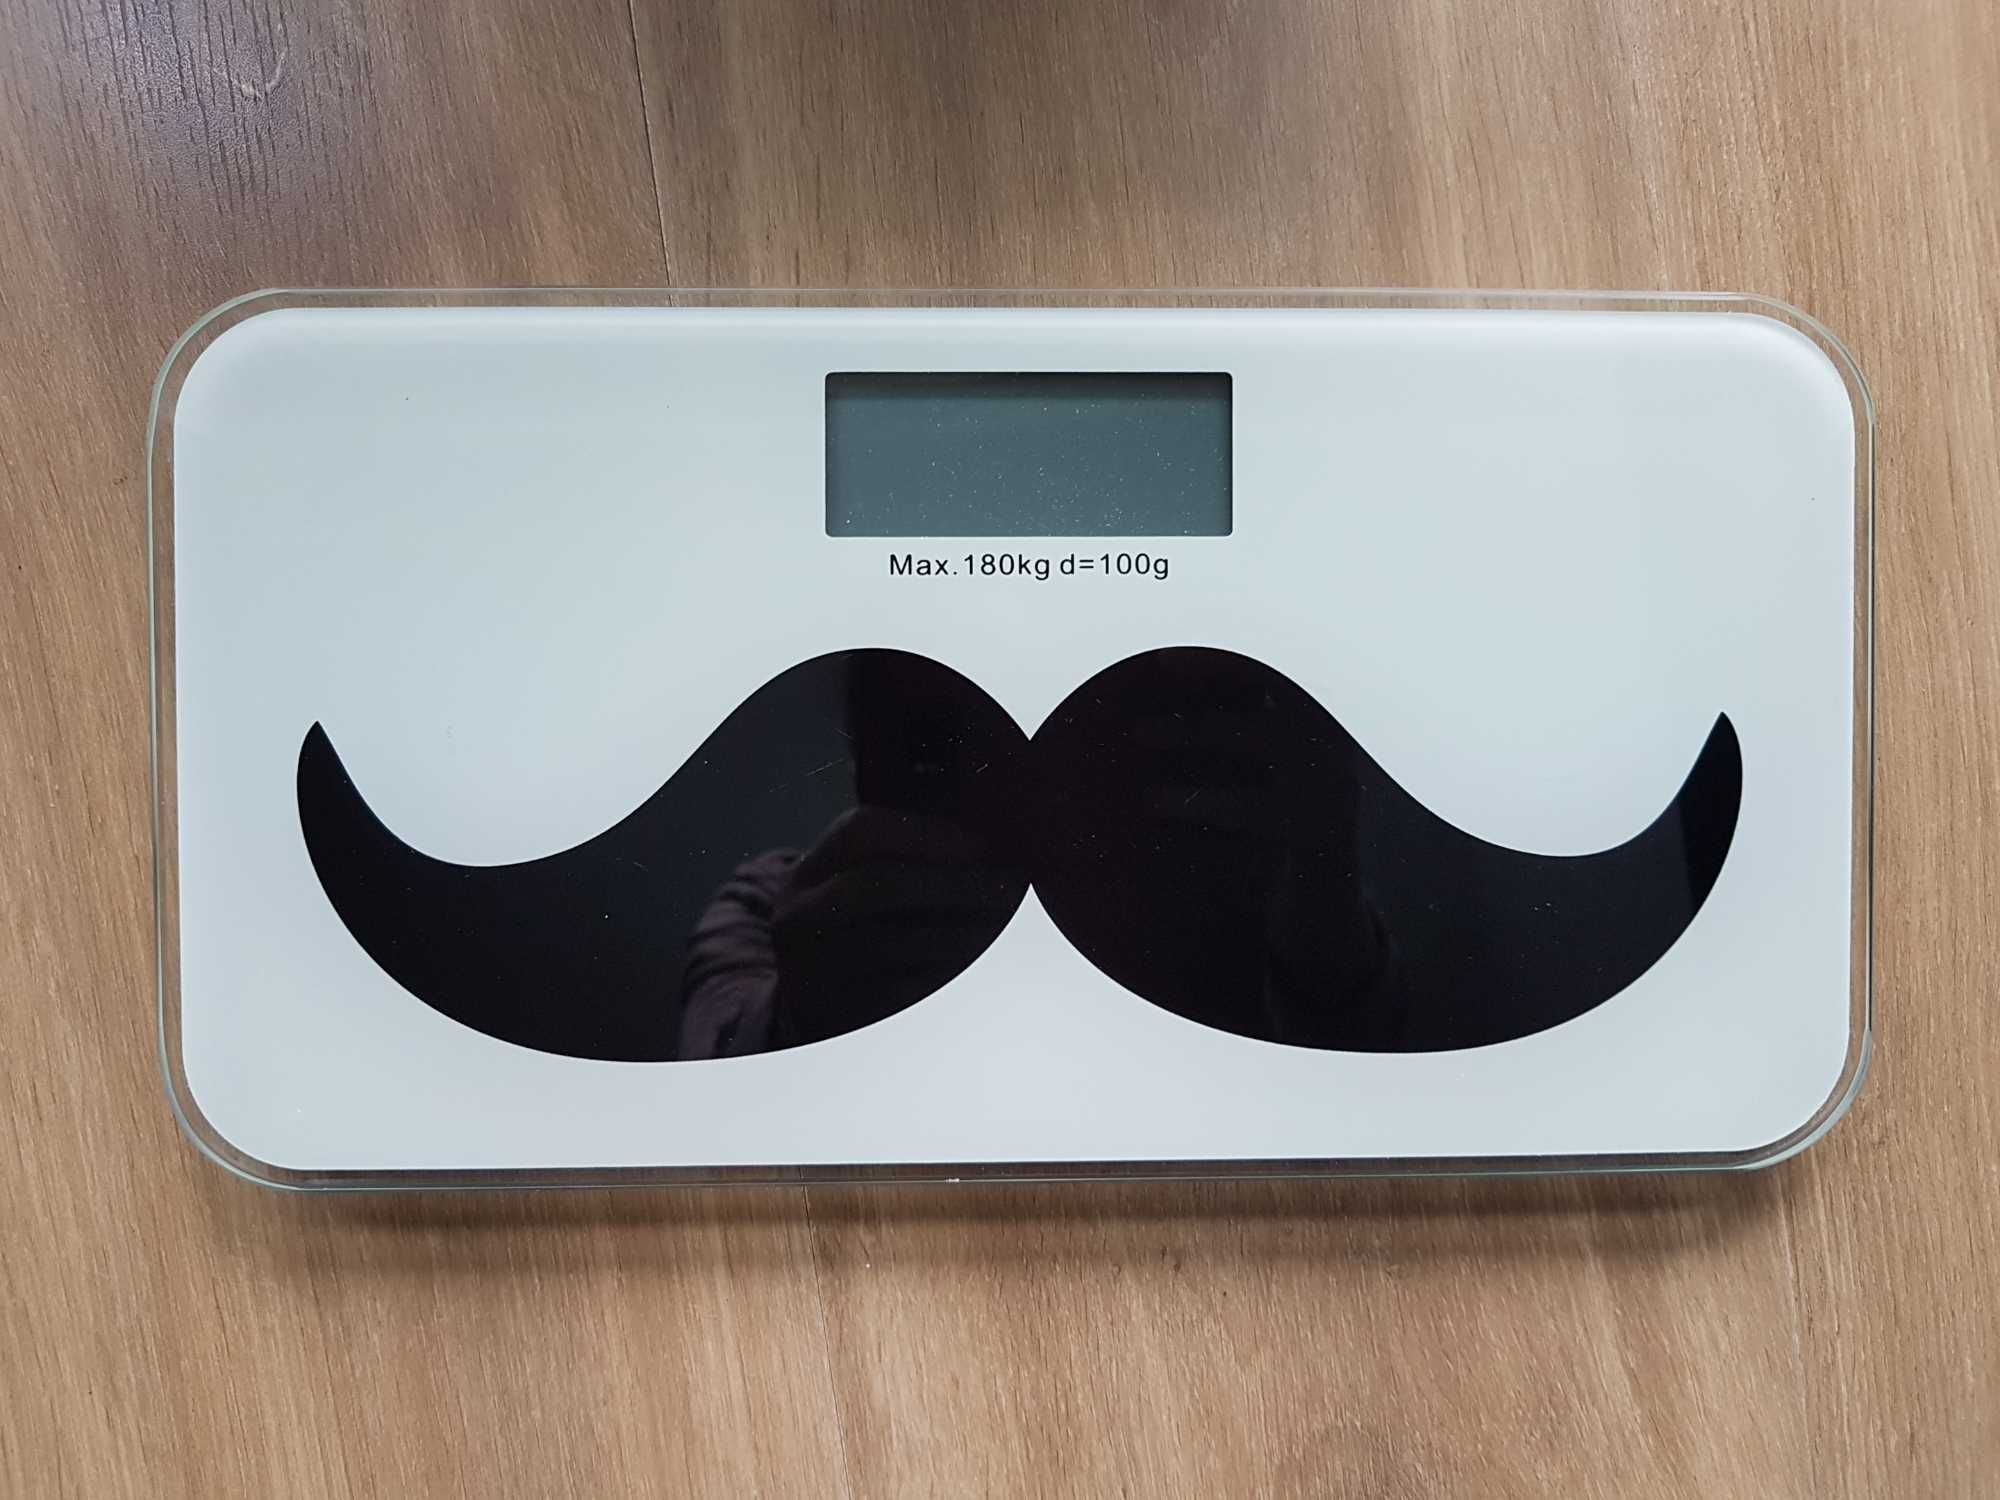 Mała wąska szklana waga łazienkowa Wąsy Mustache do 180 kg / lbs / St